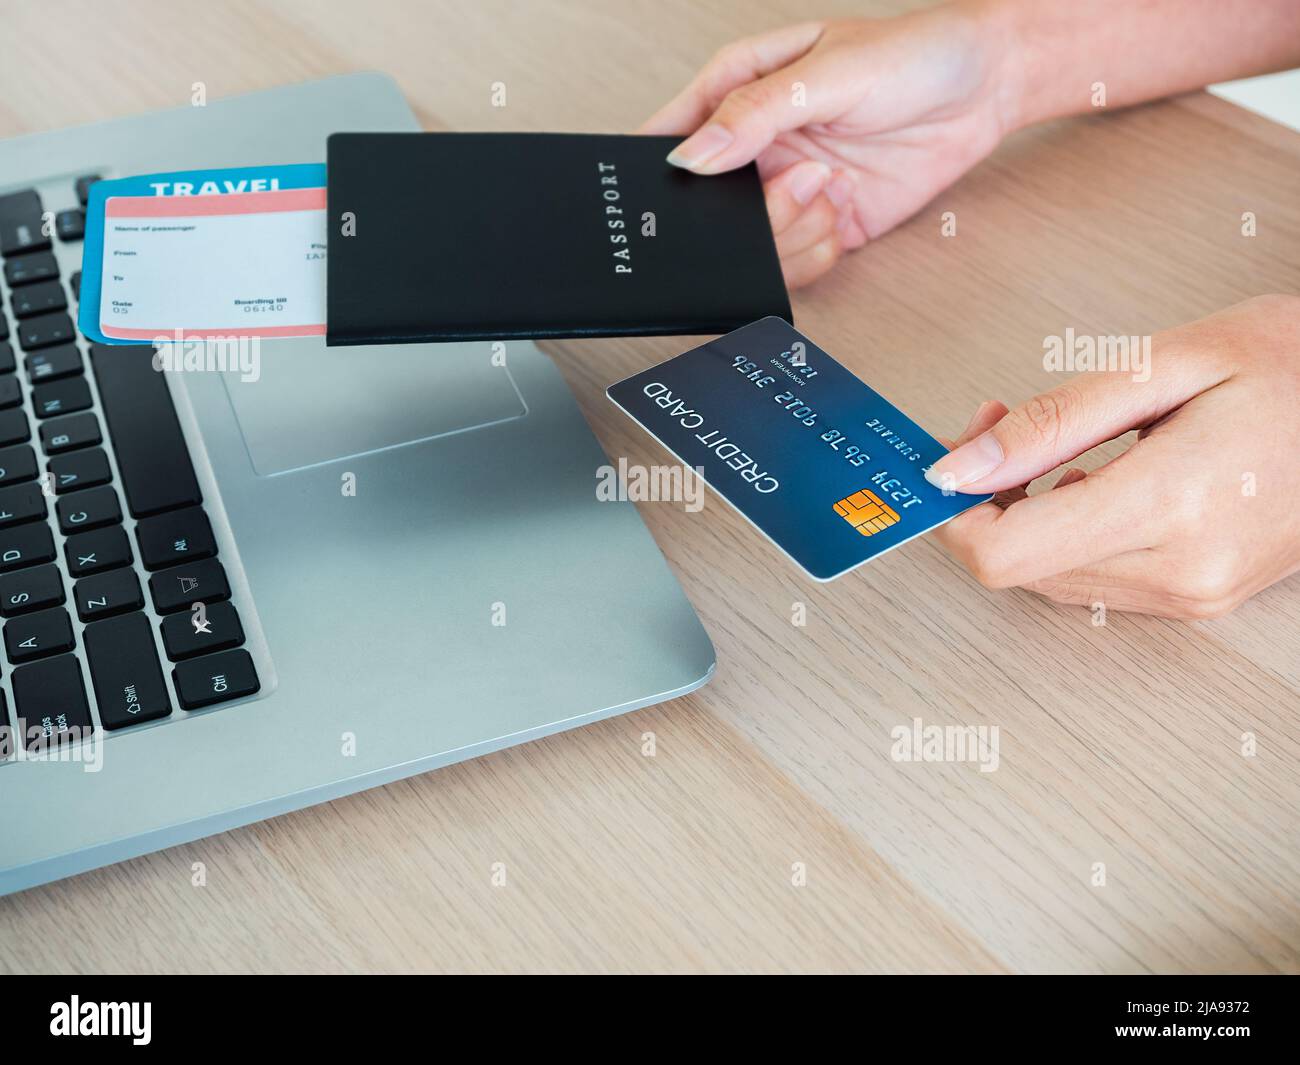 Die Hand der jungen Frau hält Kreditkarte und Reisepass, während sie den Laptop für die Flugbuchung benutzt, das Hotelzimmer für die Sommerreise auf dem Tisch, bereit für die Reise Stockfoto